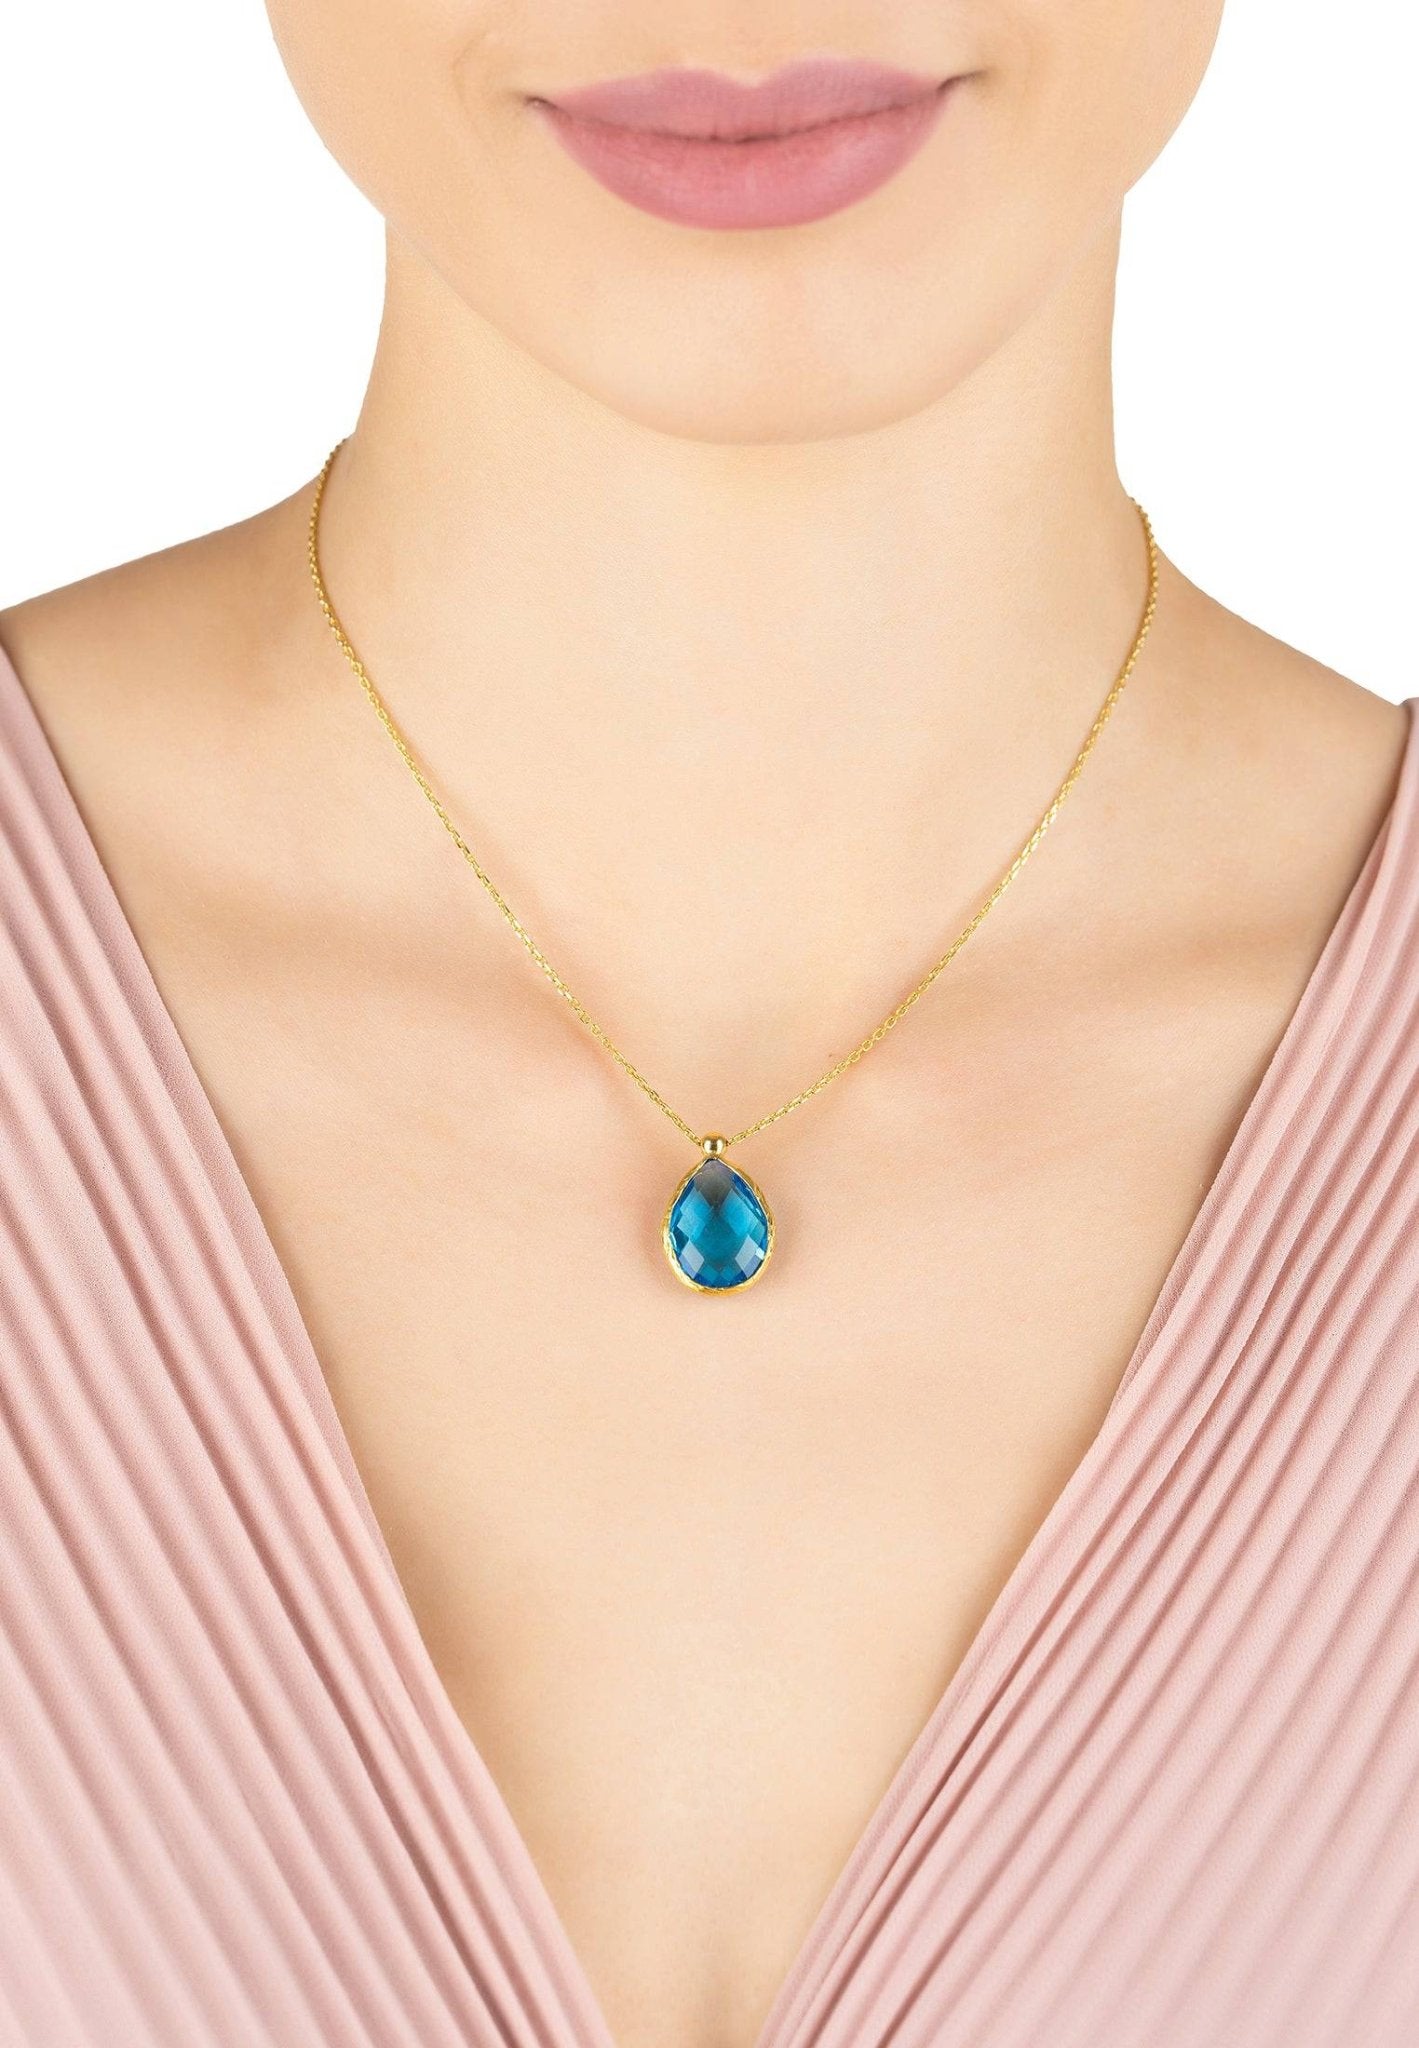 Petite Drop Necklace Gold Blue Topaz Hydro - LATELITA Necklaces